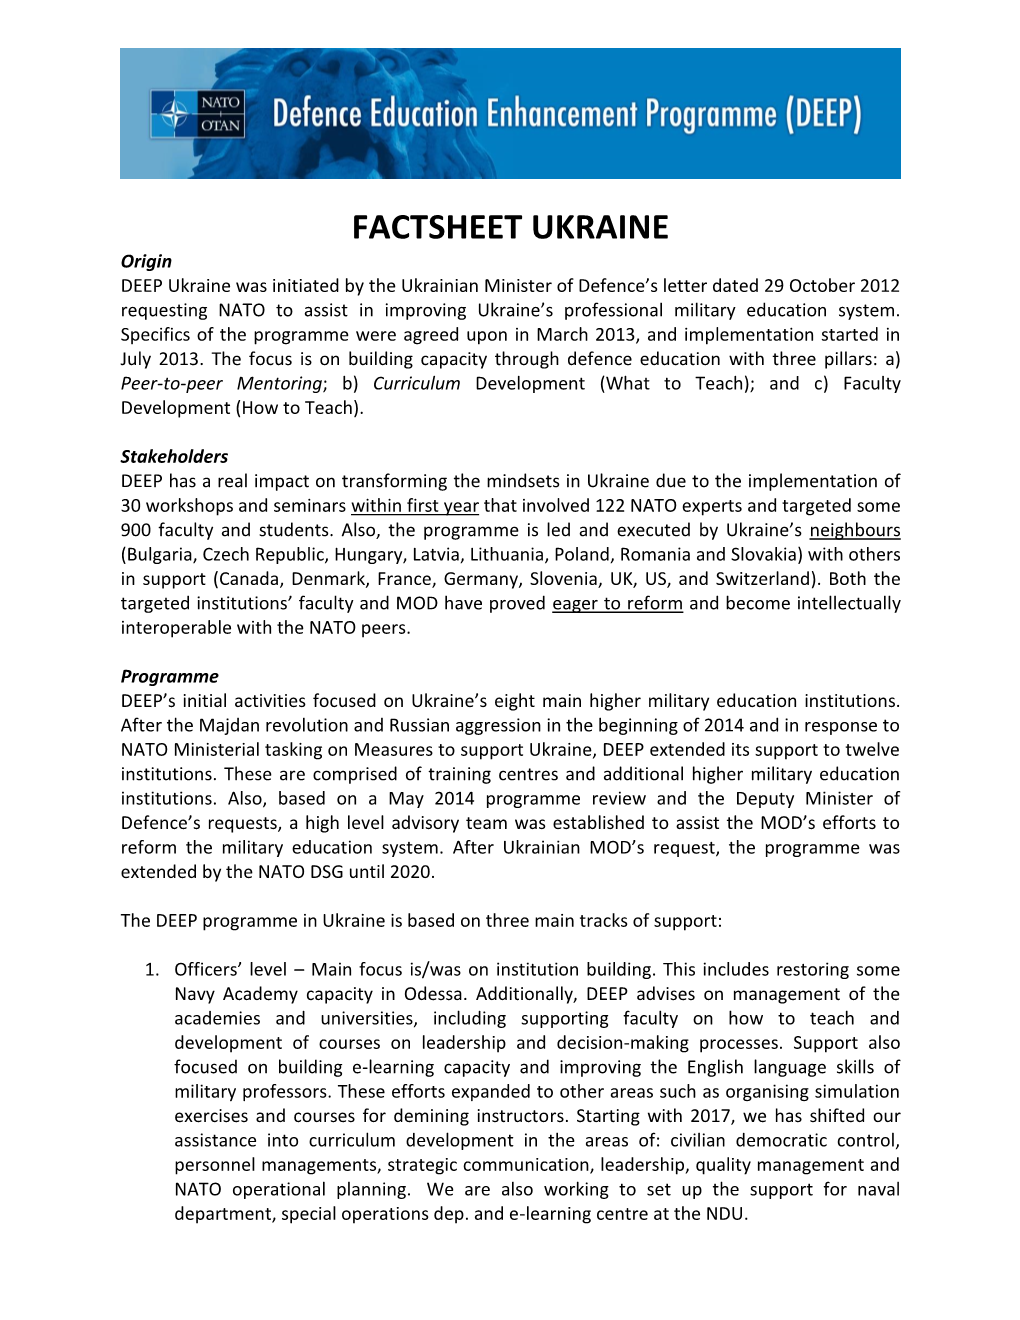 Factsheet Ukraine